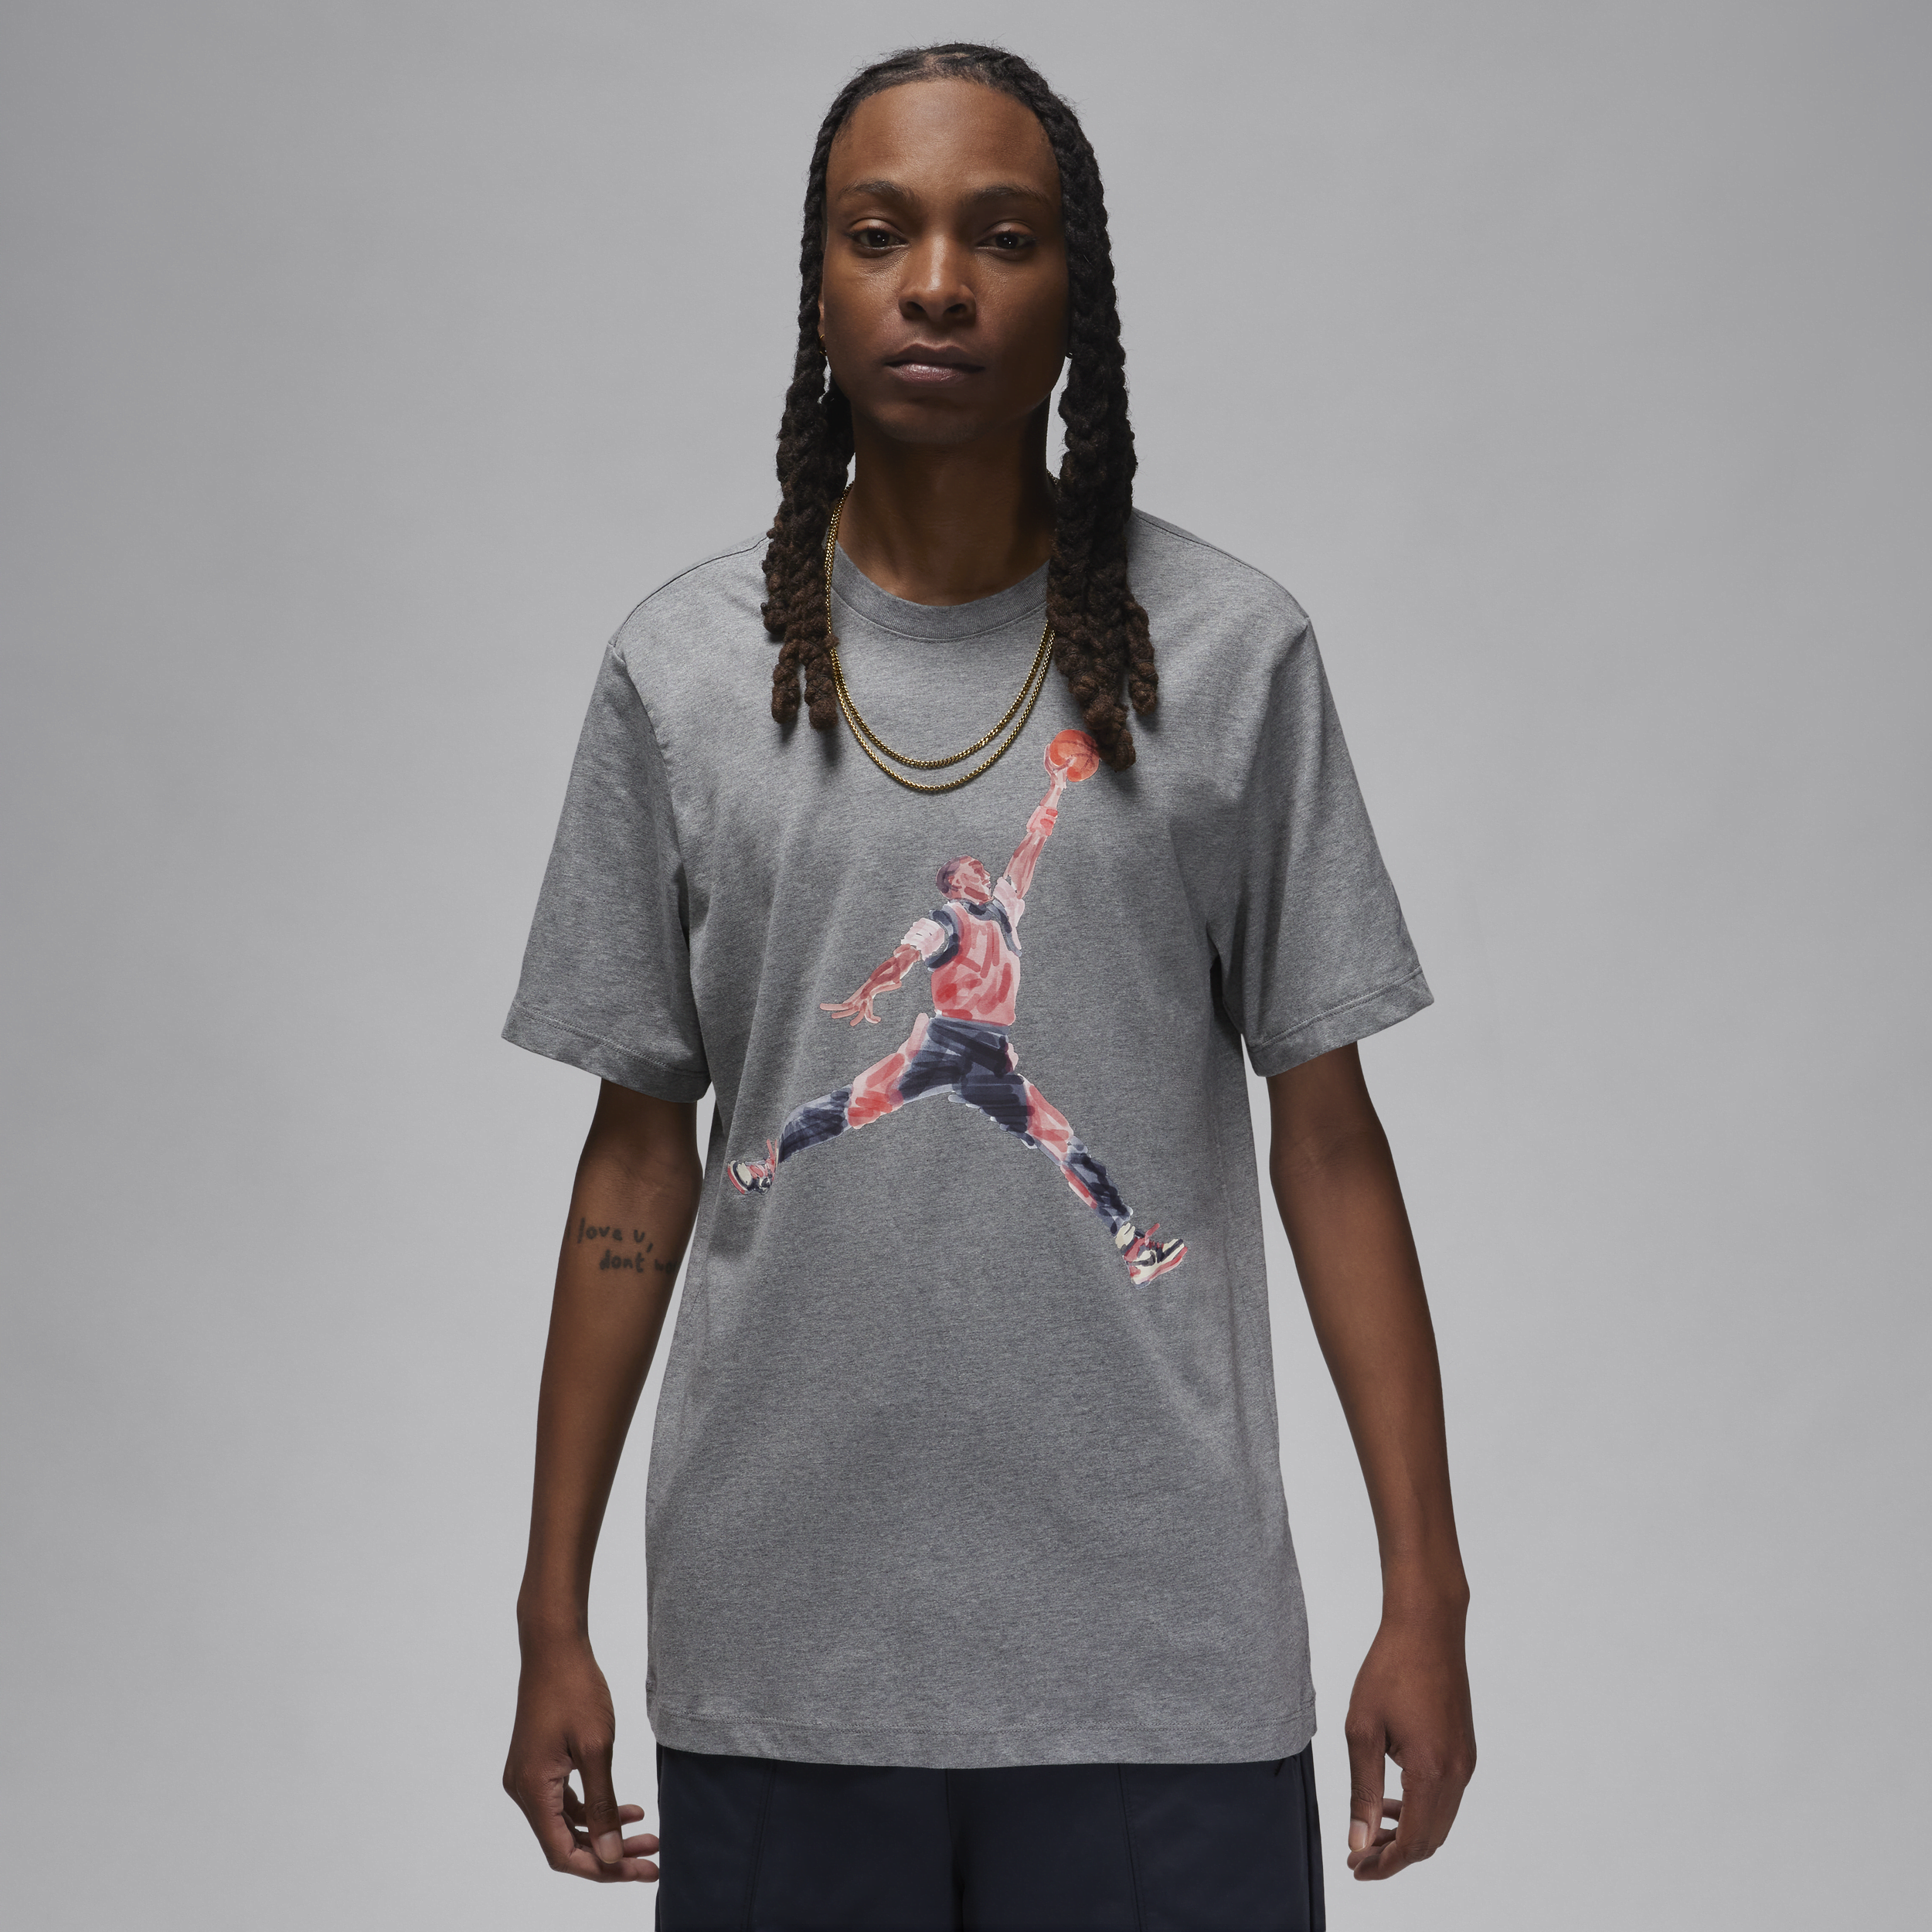 Jordan Brand-T-shirt til mænd - grå